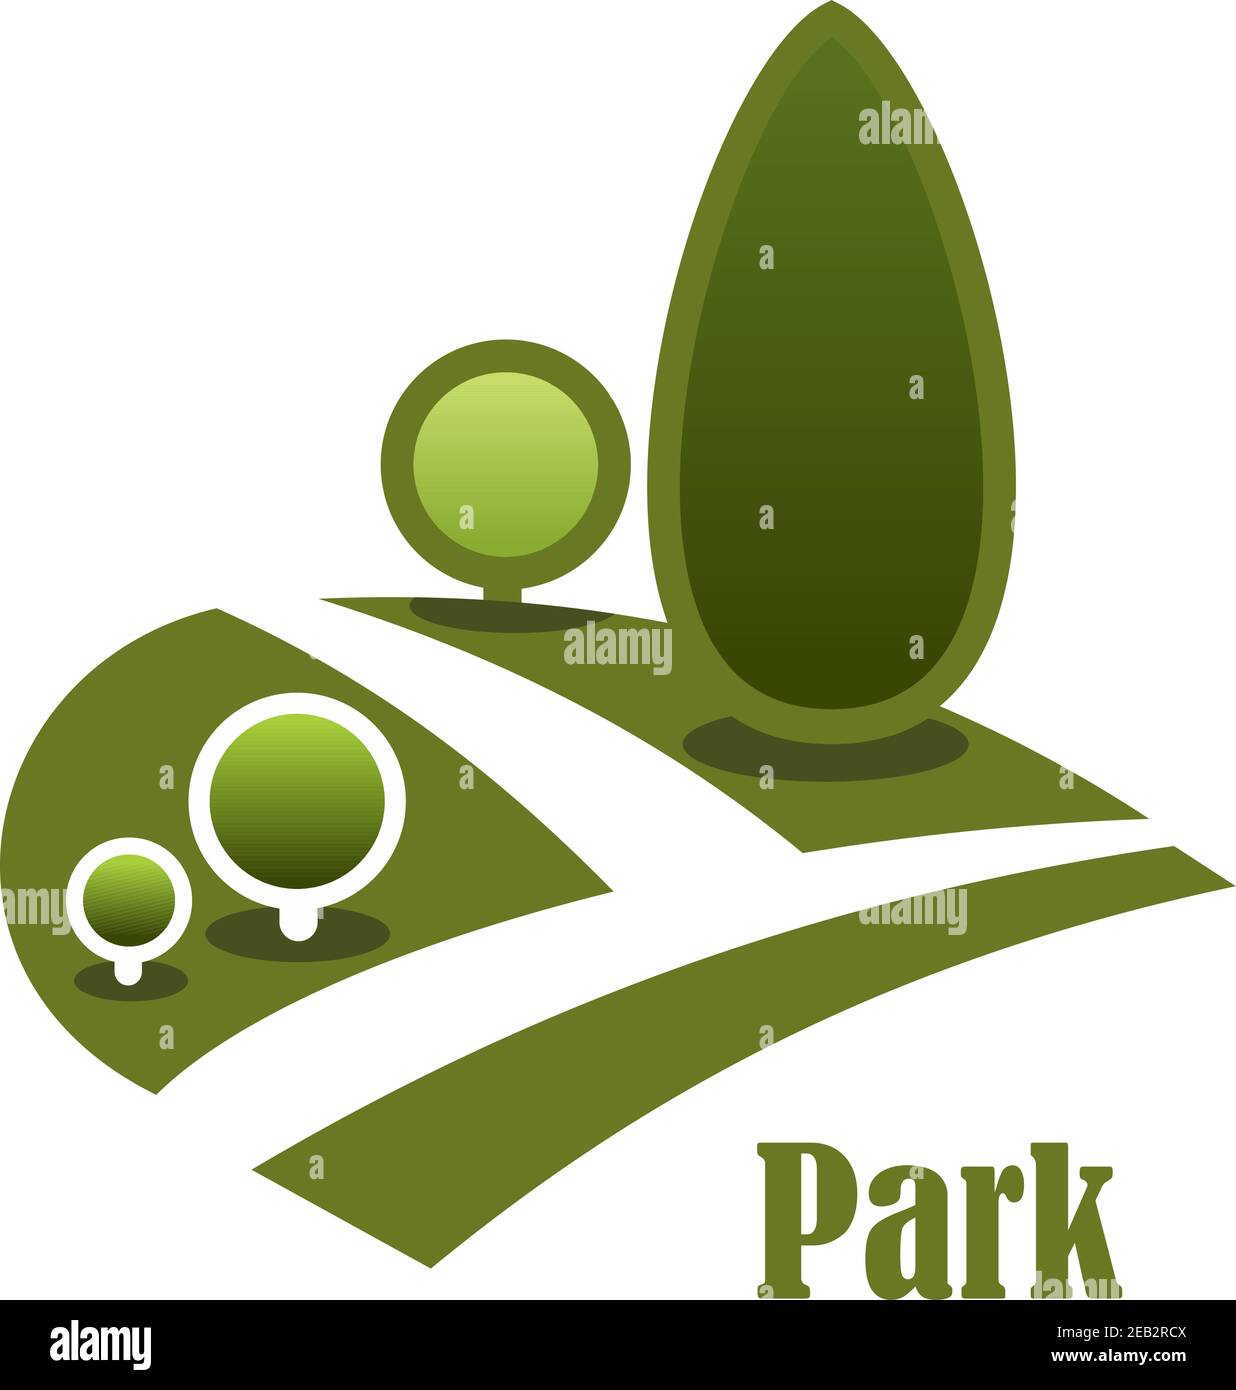 Sommer Park Landschaft Ikone mit abgeschiedenen Gehweg zwischen grünen Rasen Mit Bäumen und Sträuchern isoliert auf weißem Hintergrund mit Text Parken Stock Vektor